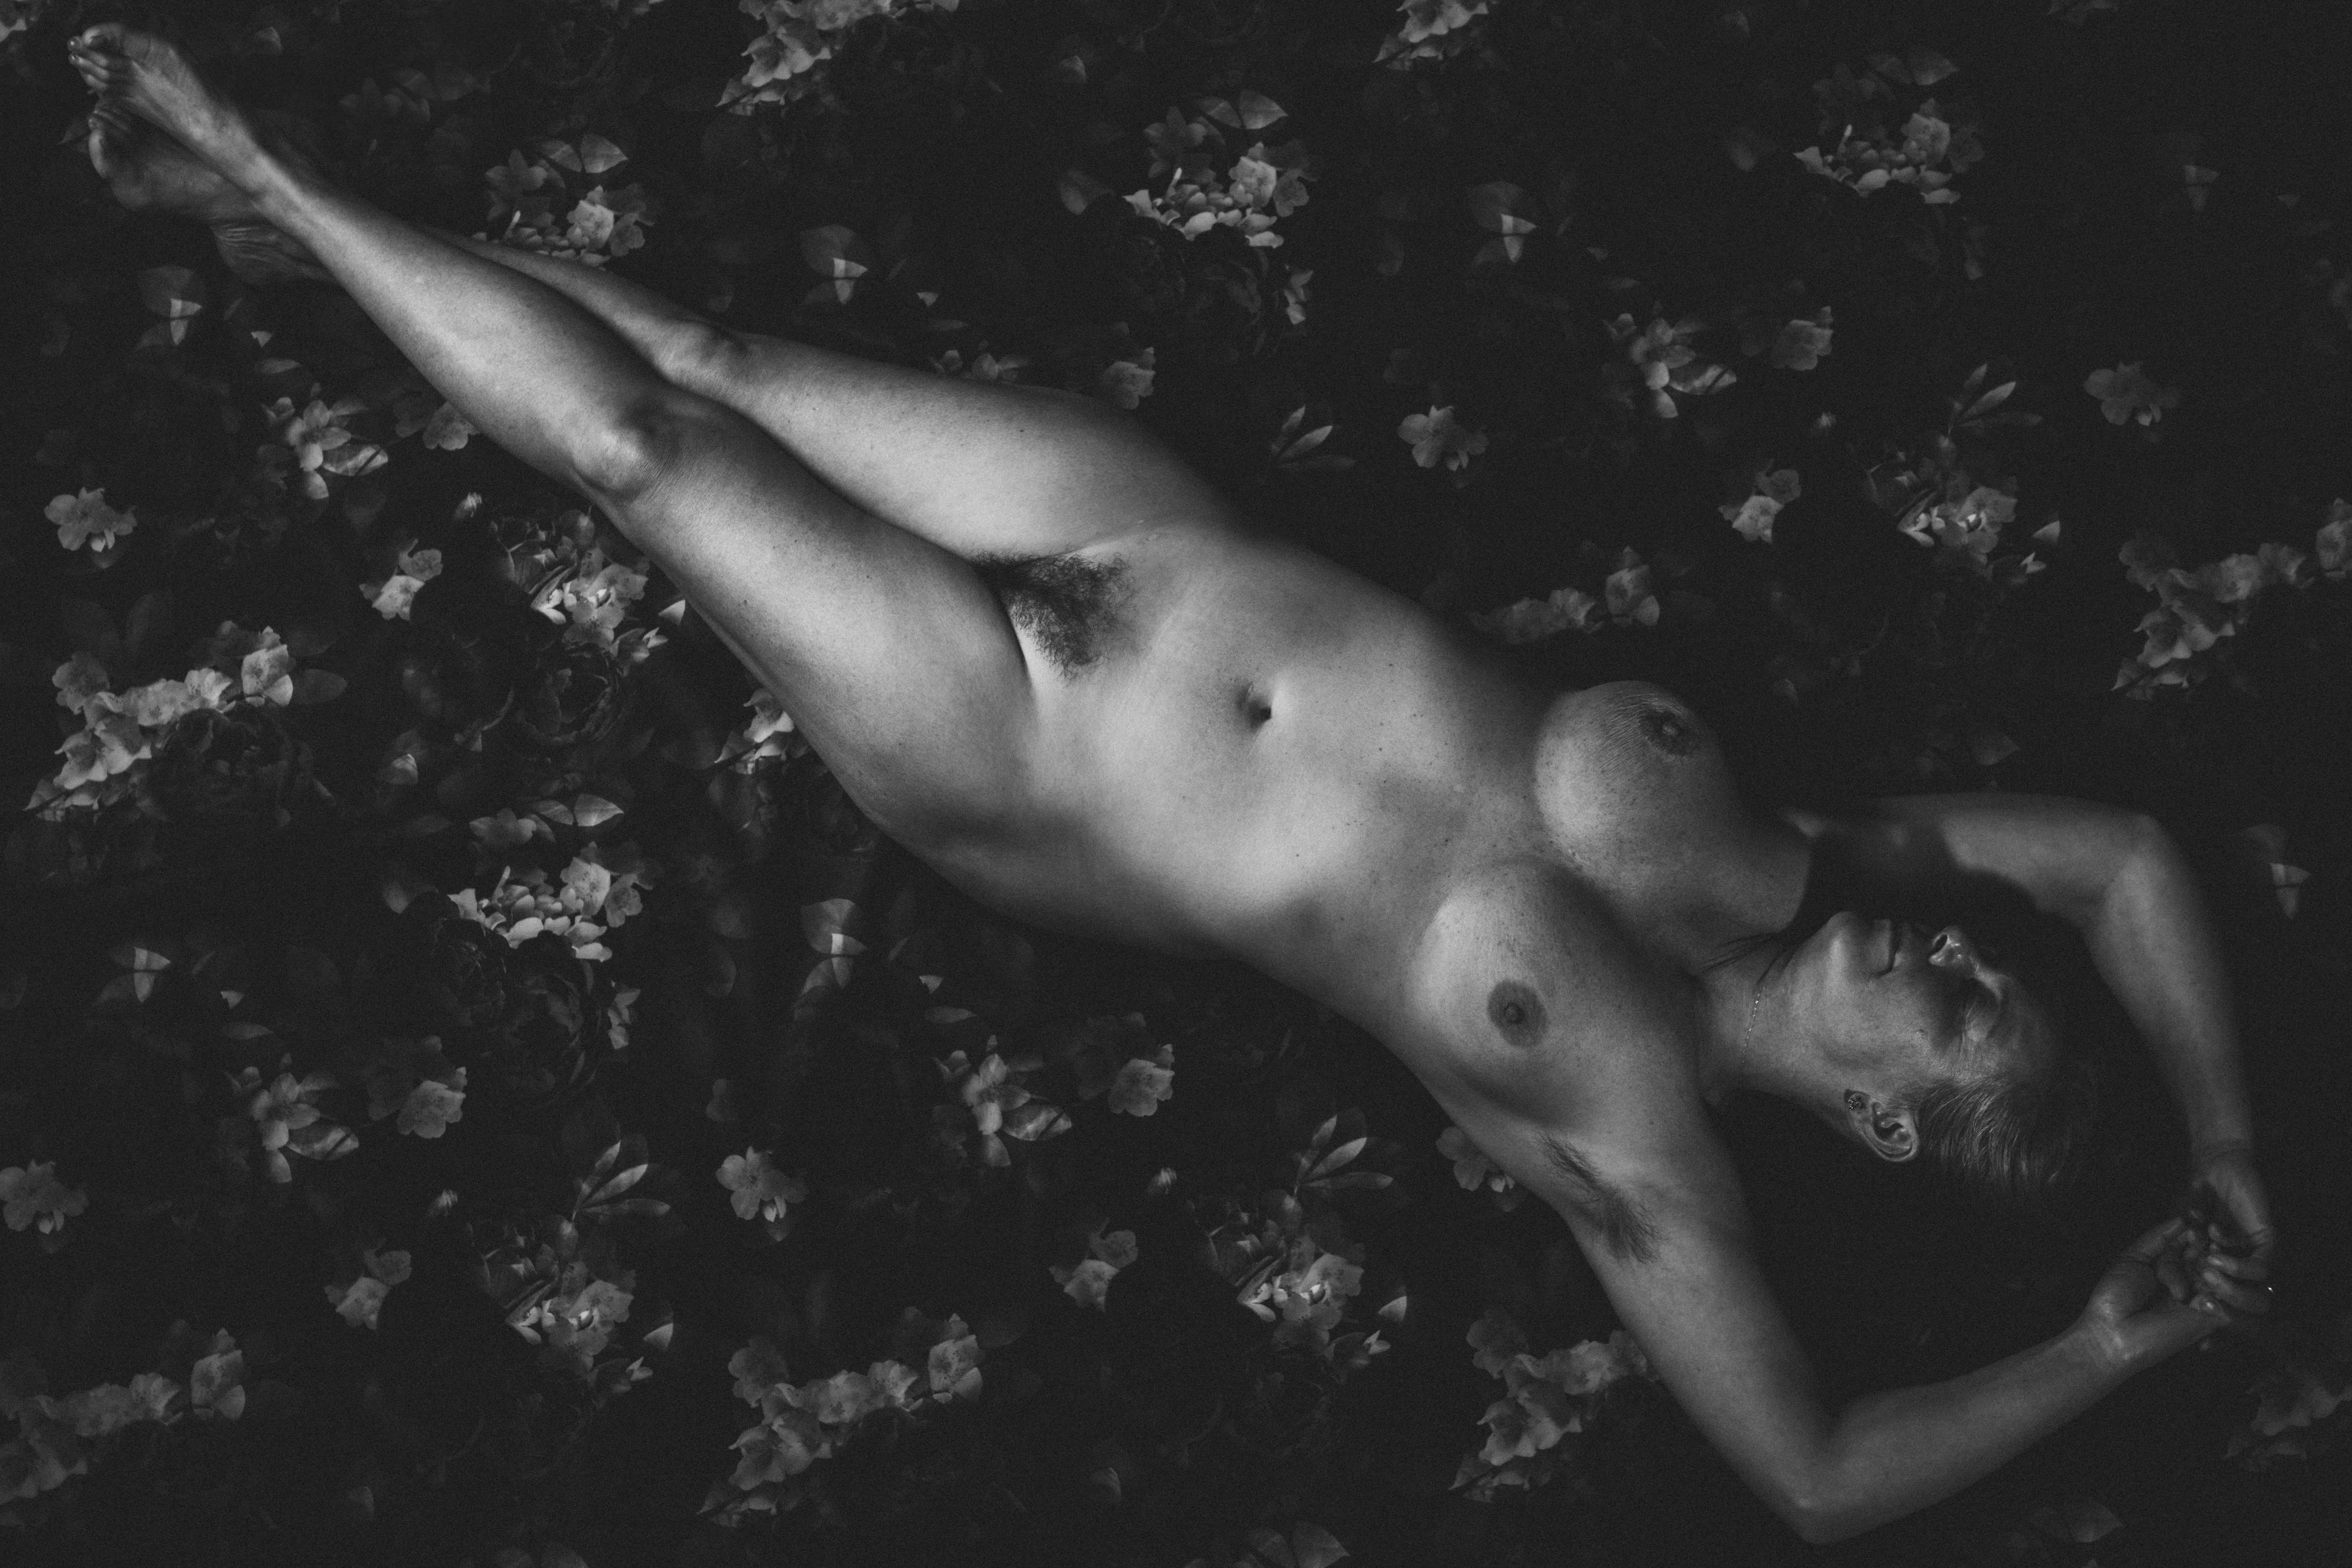 Porträt einer nackten Frau, bildende Kunst, Aktfotografie, limitierte Auflage 2/3 – Photograph von Laurentina Miksys